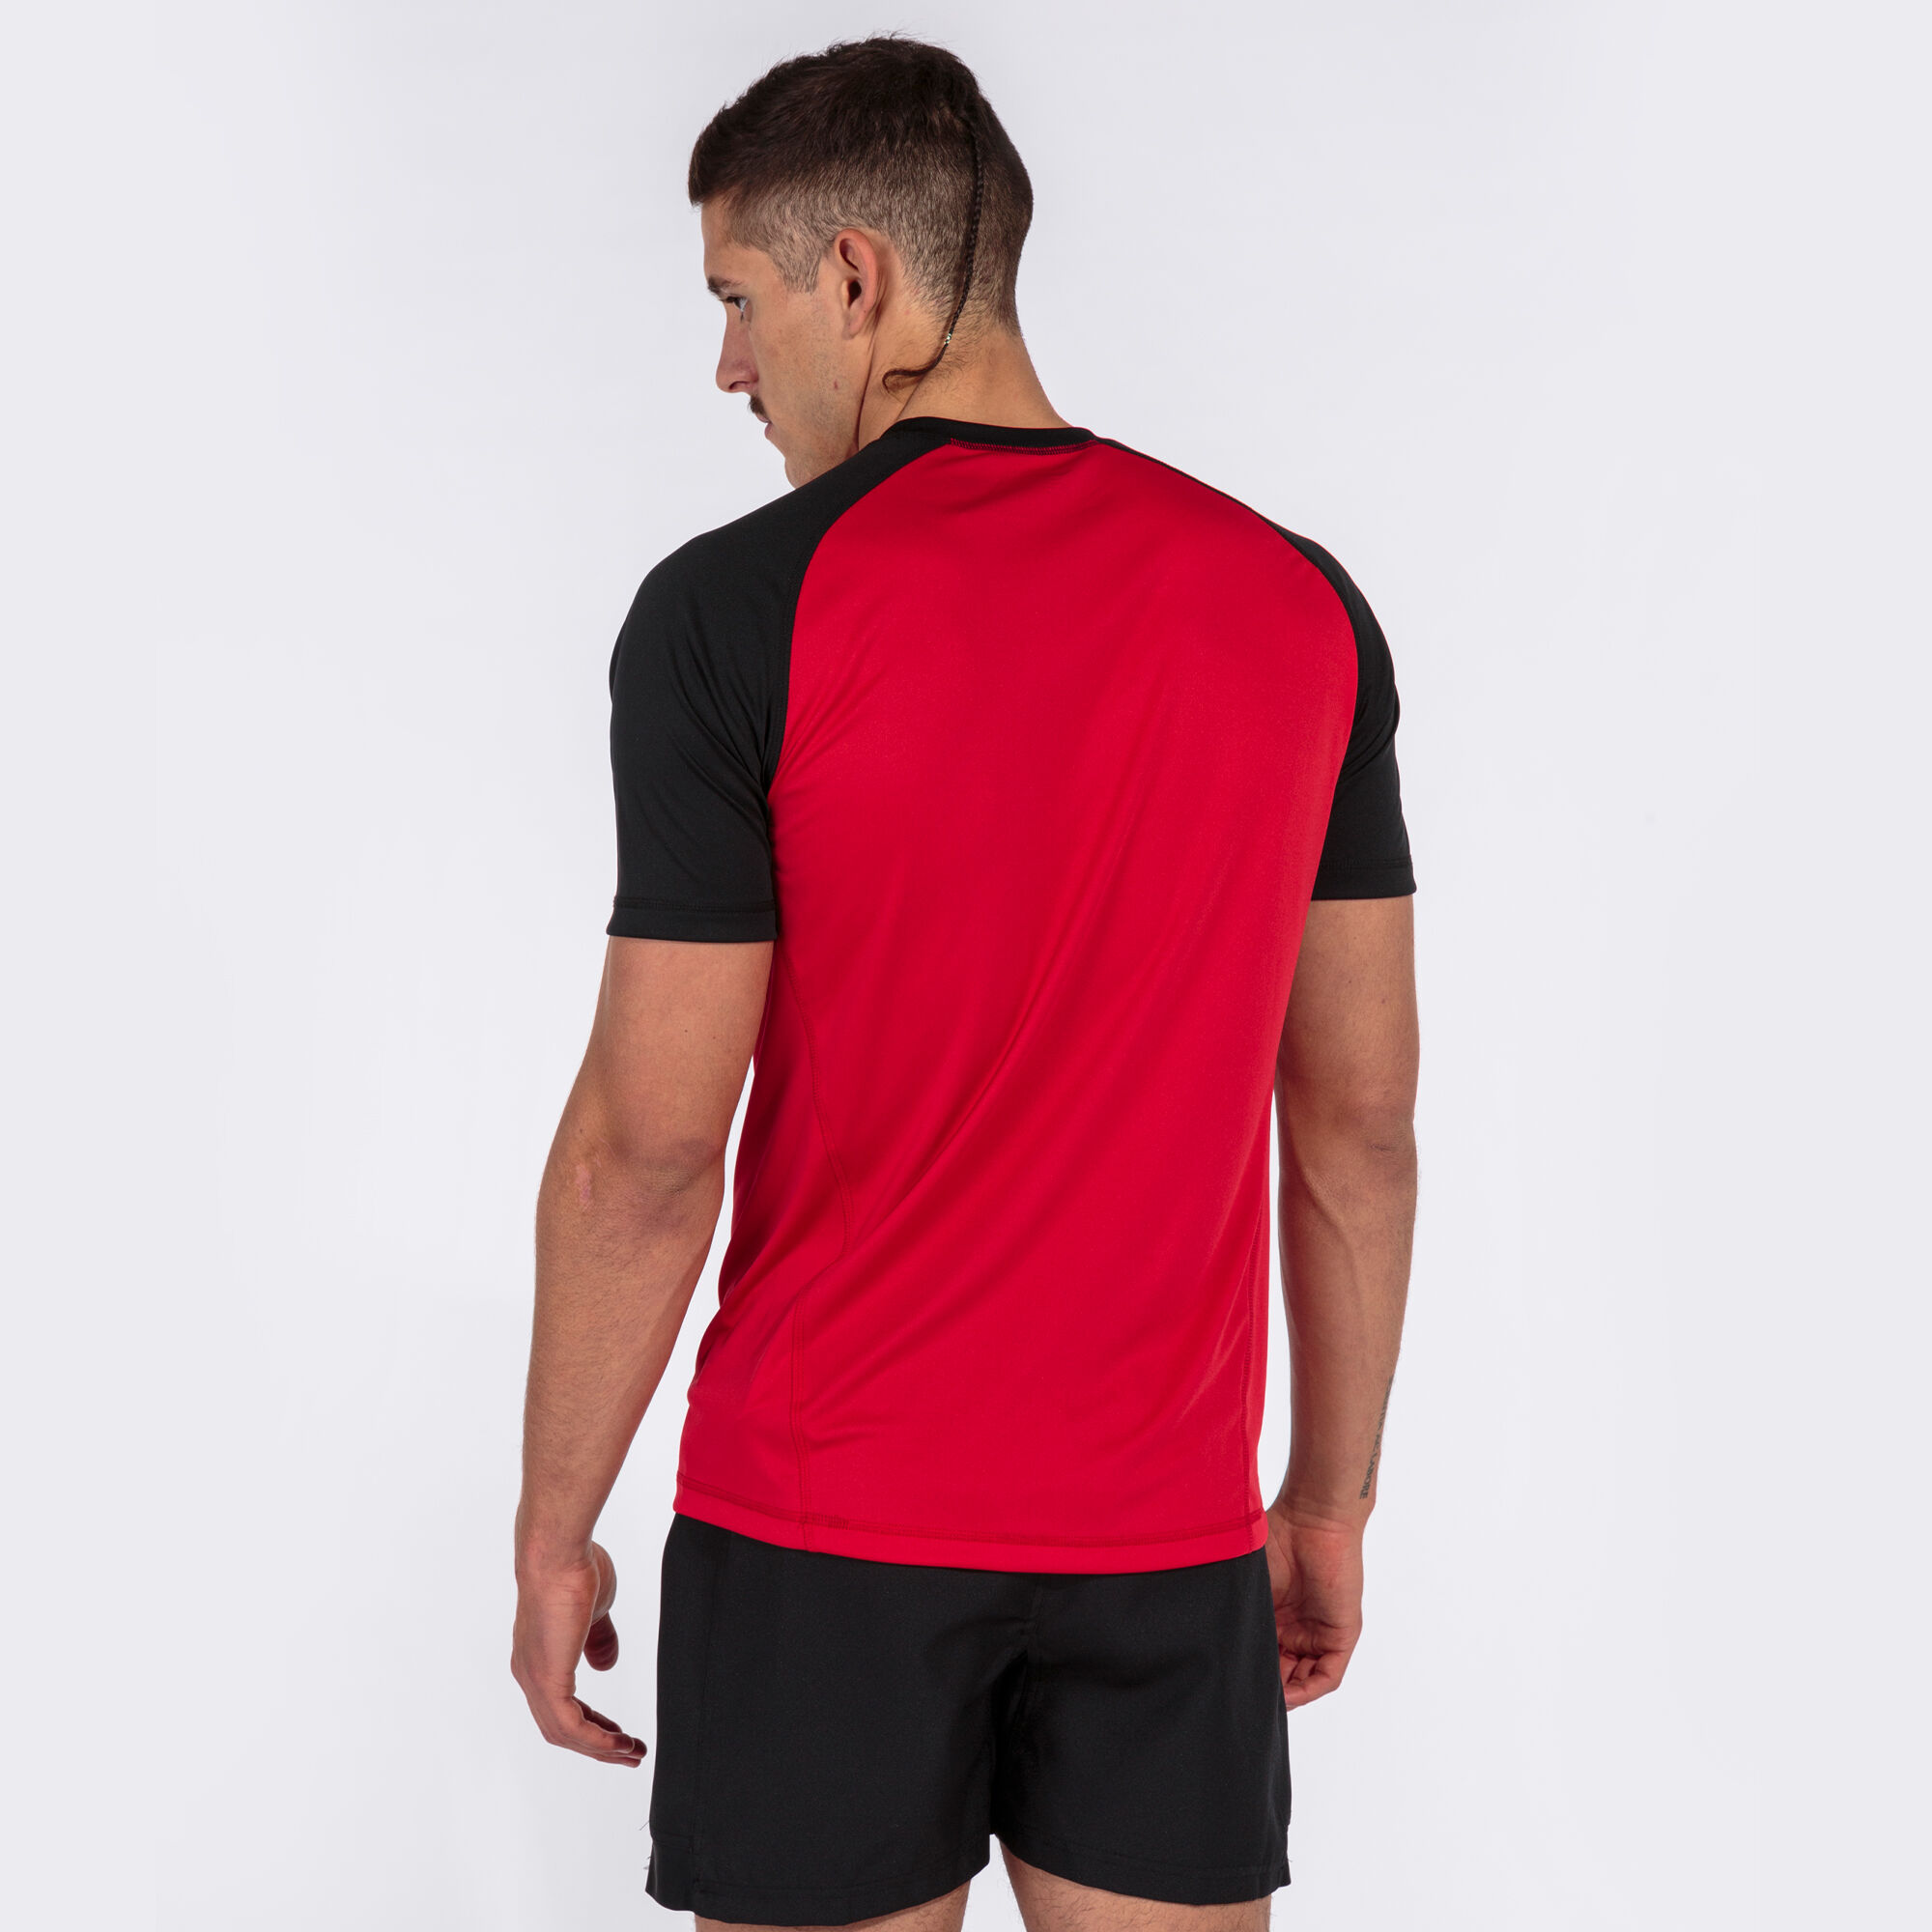 KIT DRY- Camiseta Roja + short negro